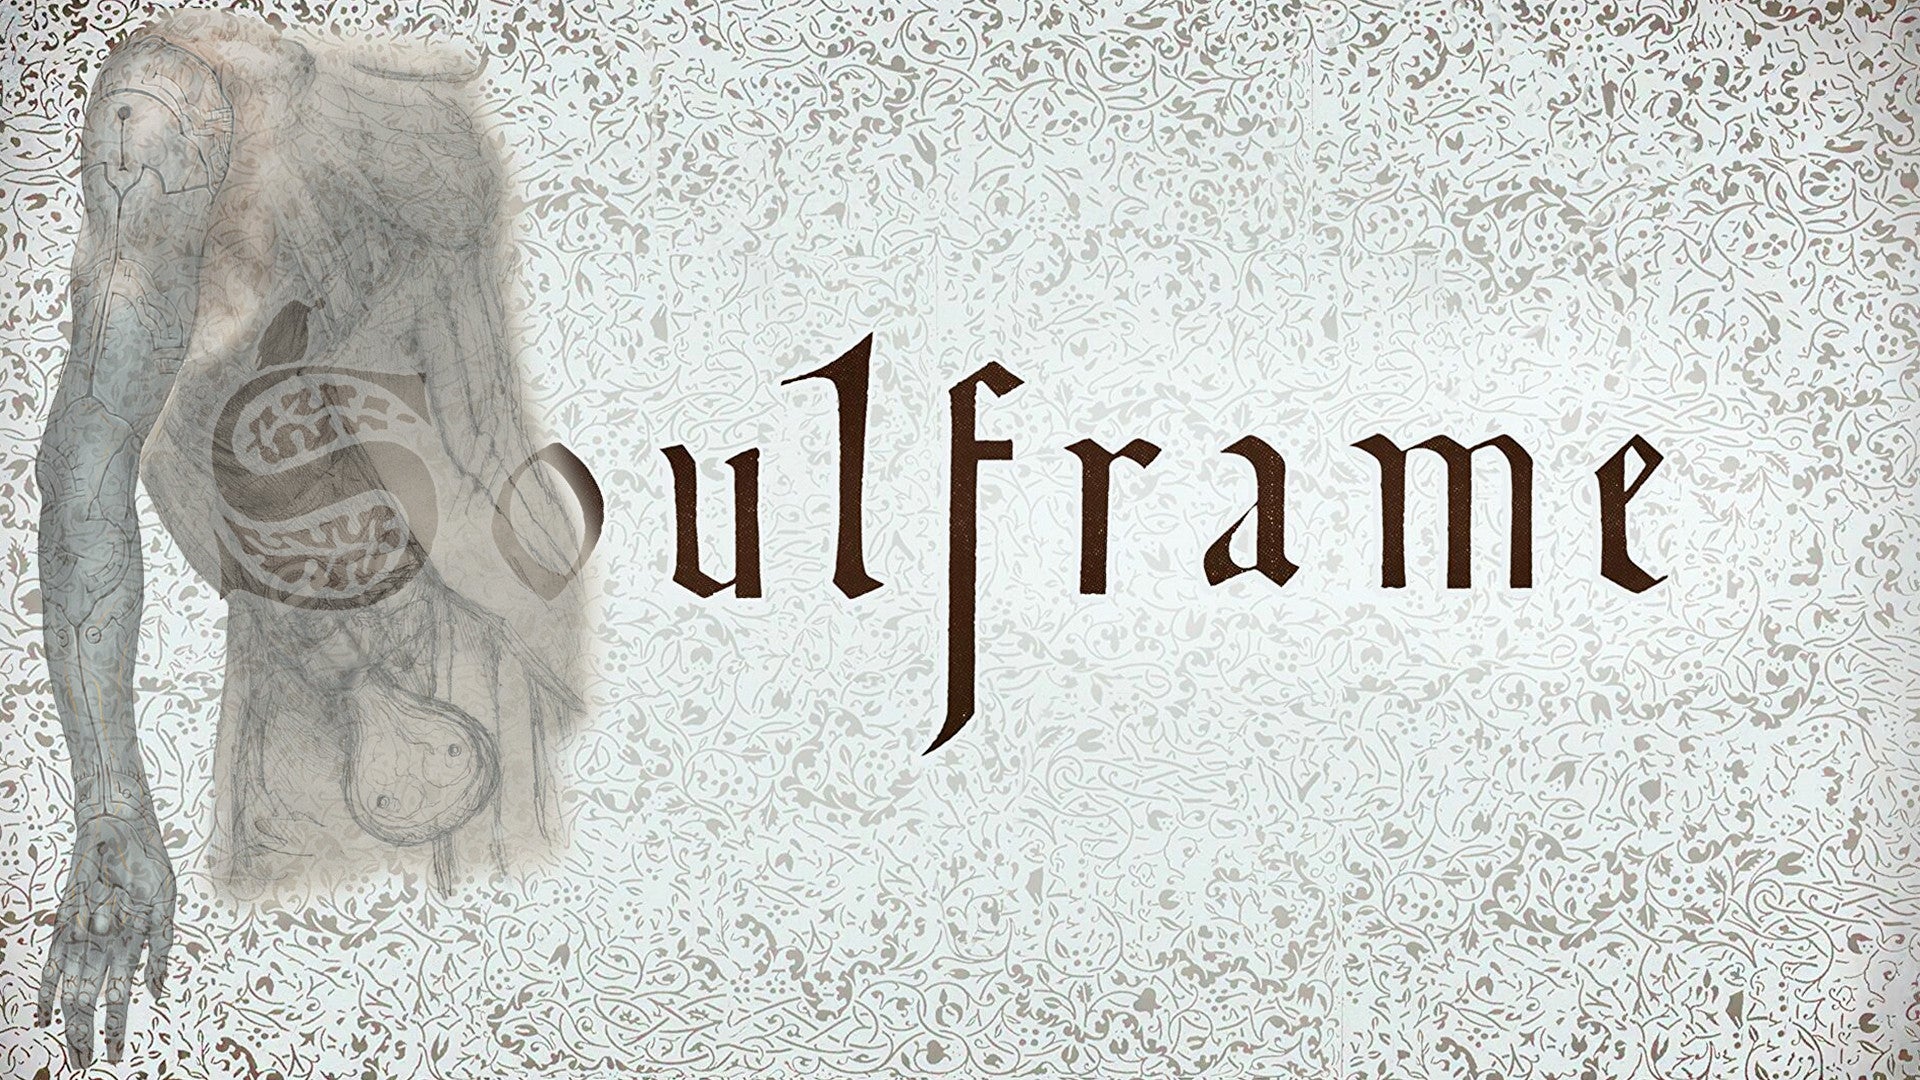 Bilder zu Soulframe ist ein neues Fantasy-Game von den Warframe-Entwicklern